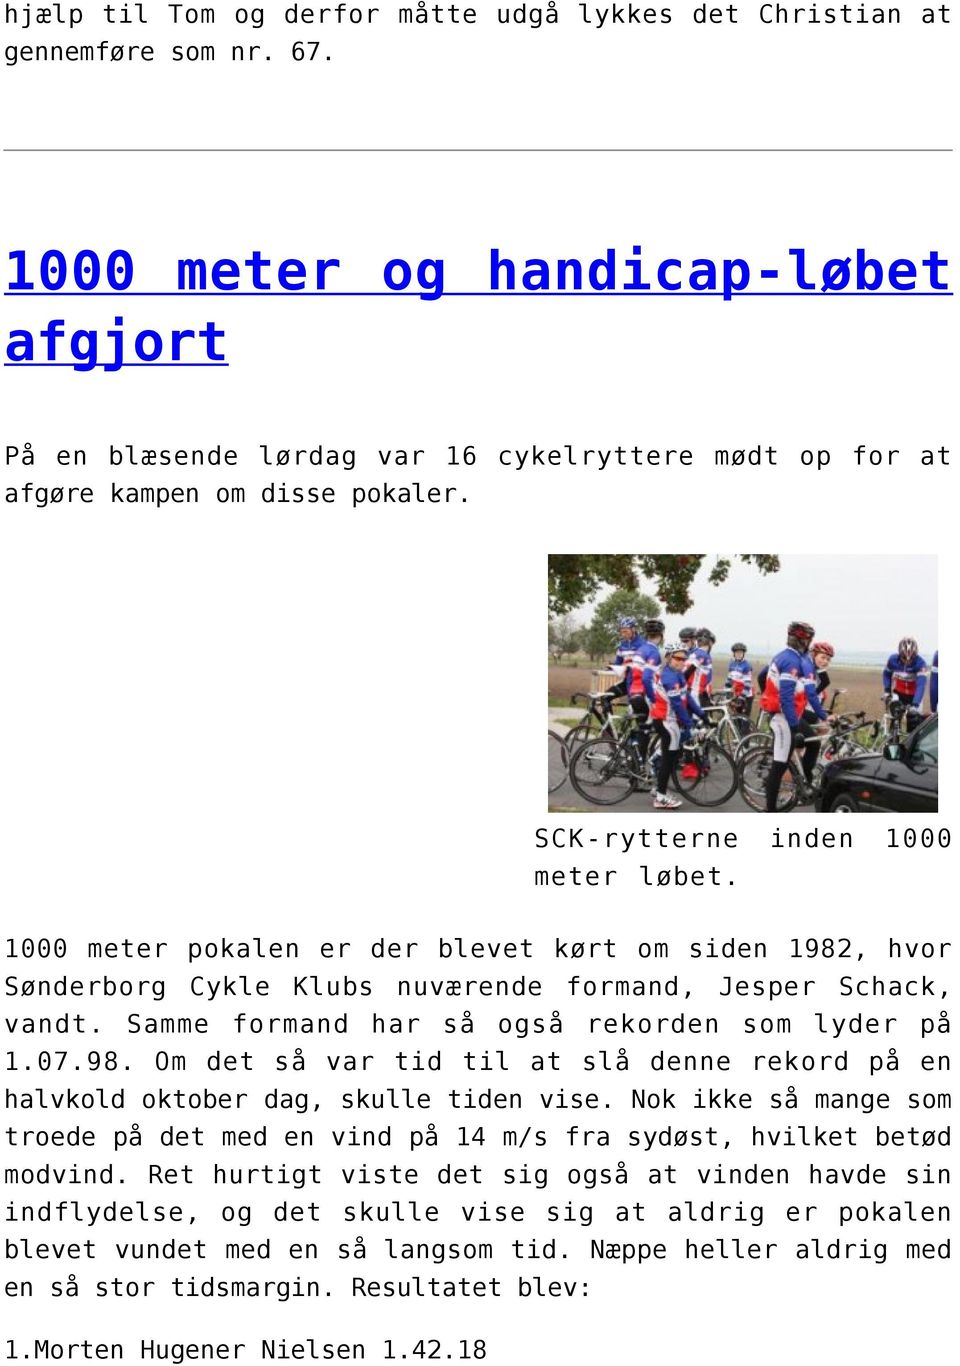 1000 meter pokalen er der blevet kørt om siden 1982, hvor Sønderborg Cykle Klubs nuværende formand, Jesper Schack, vandt. Samme formand har så også rekorden som lyder på 1.07.98. Om det så var tid til at slå denne rekord på en halvkold oktober dag, skulle tiden vise.